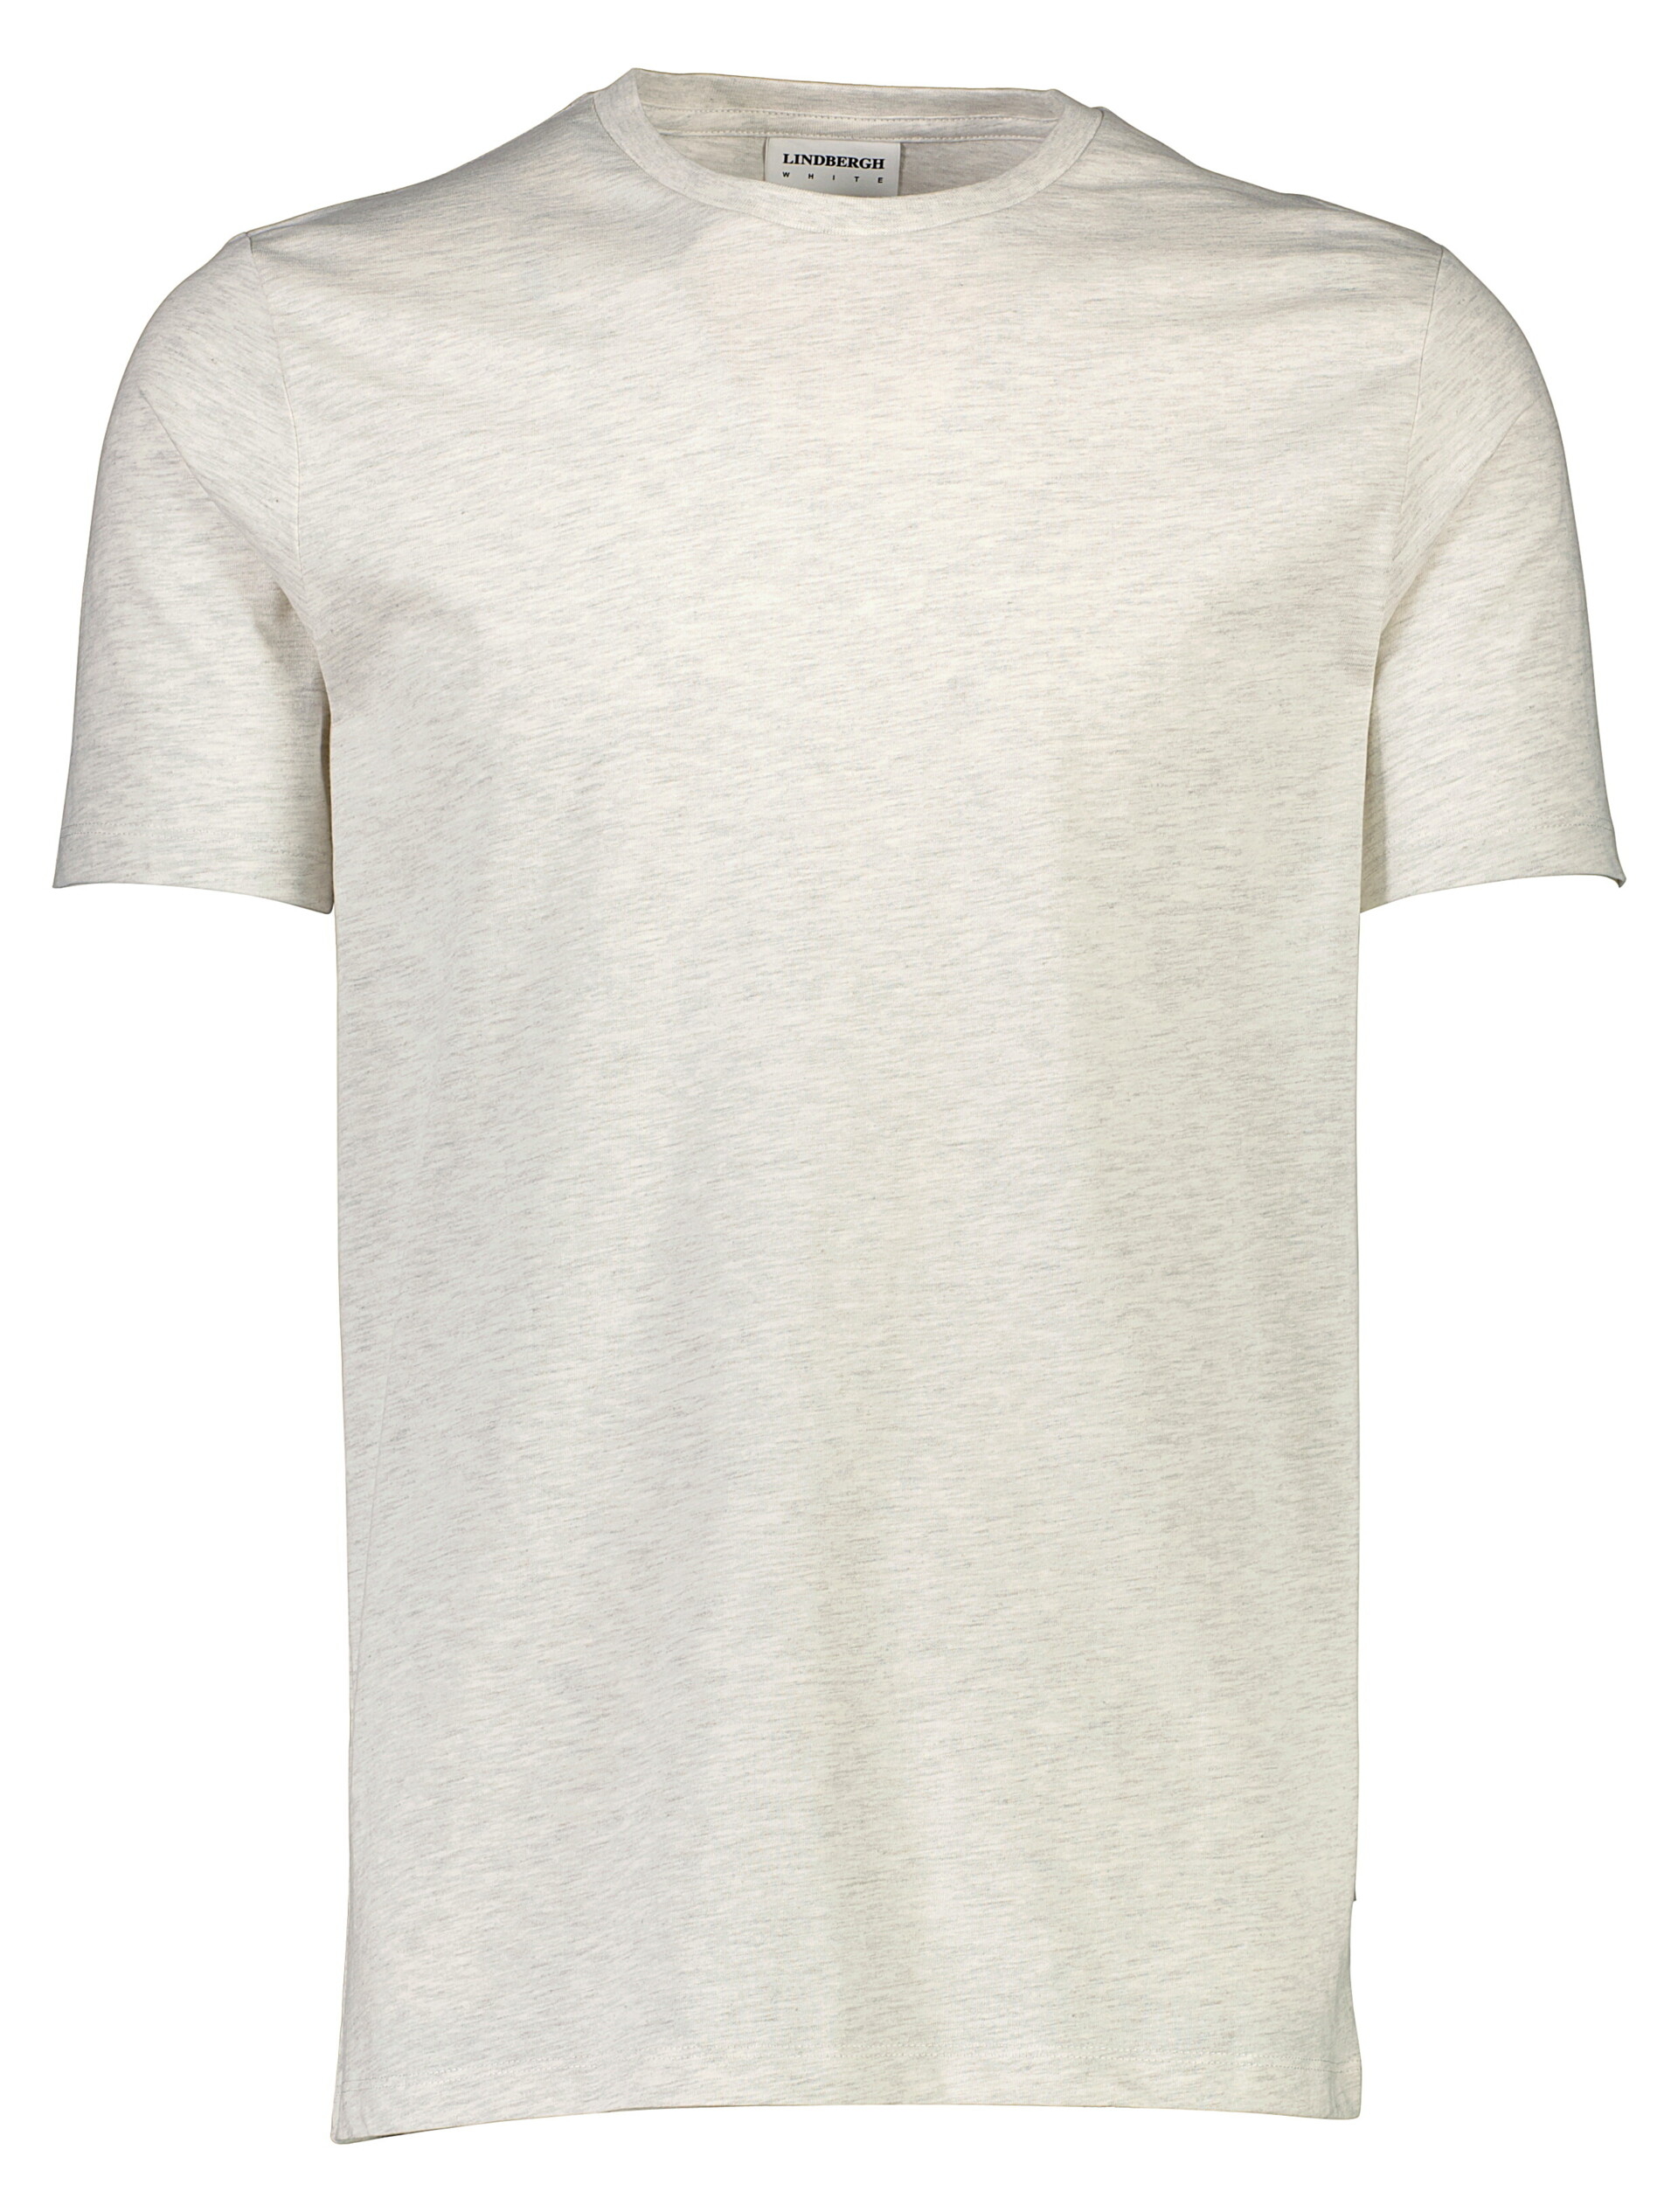 Lindbergh T-shirt weiss / off white mel